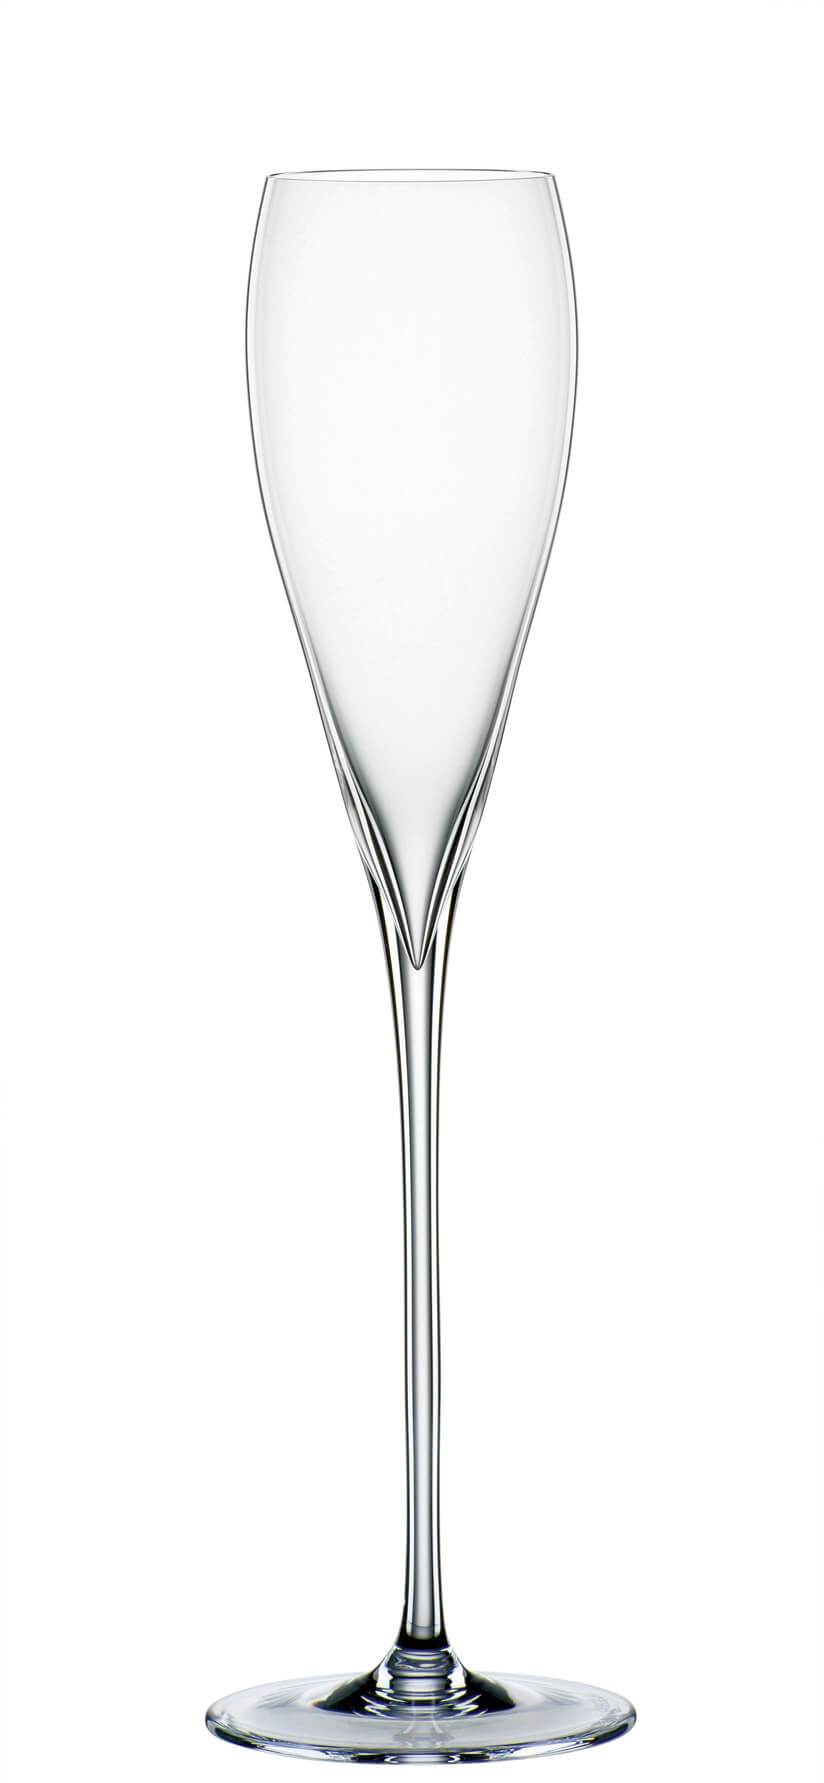 Sparkling wine glass Adina Prestige, Spiegelau - 160ml (1 pc.)